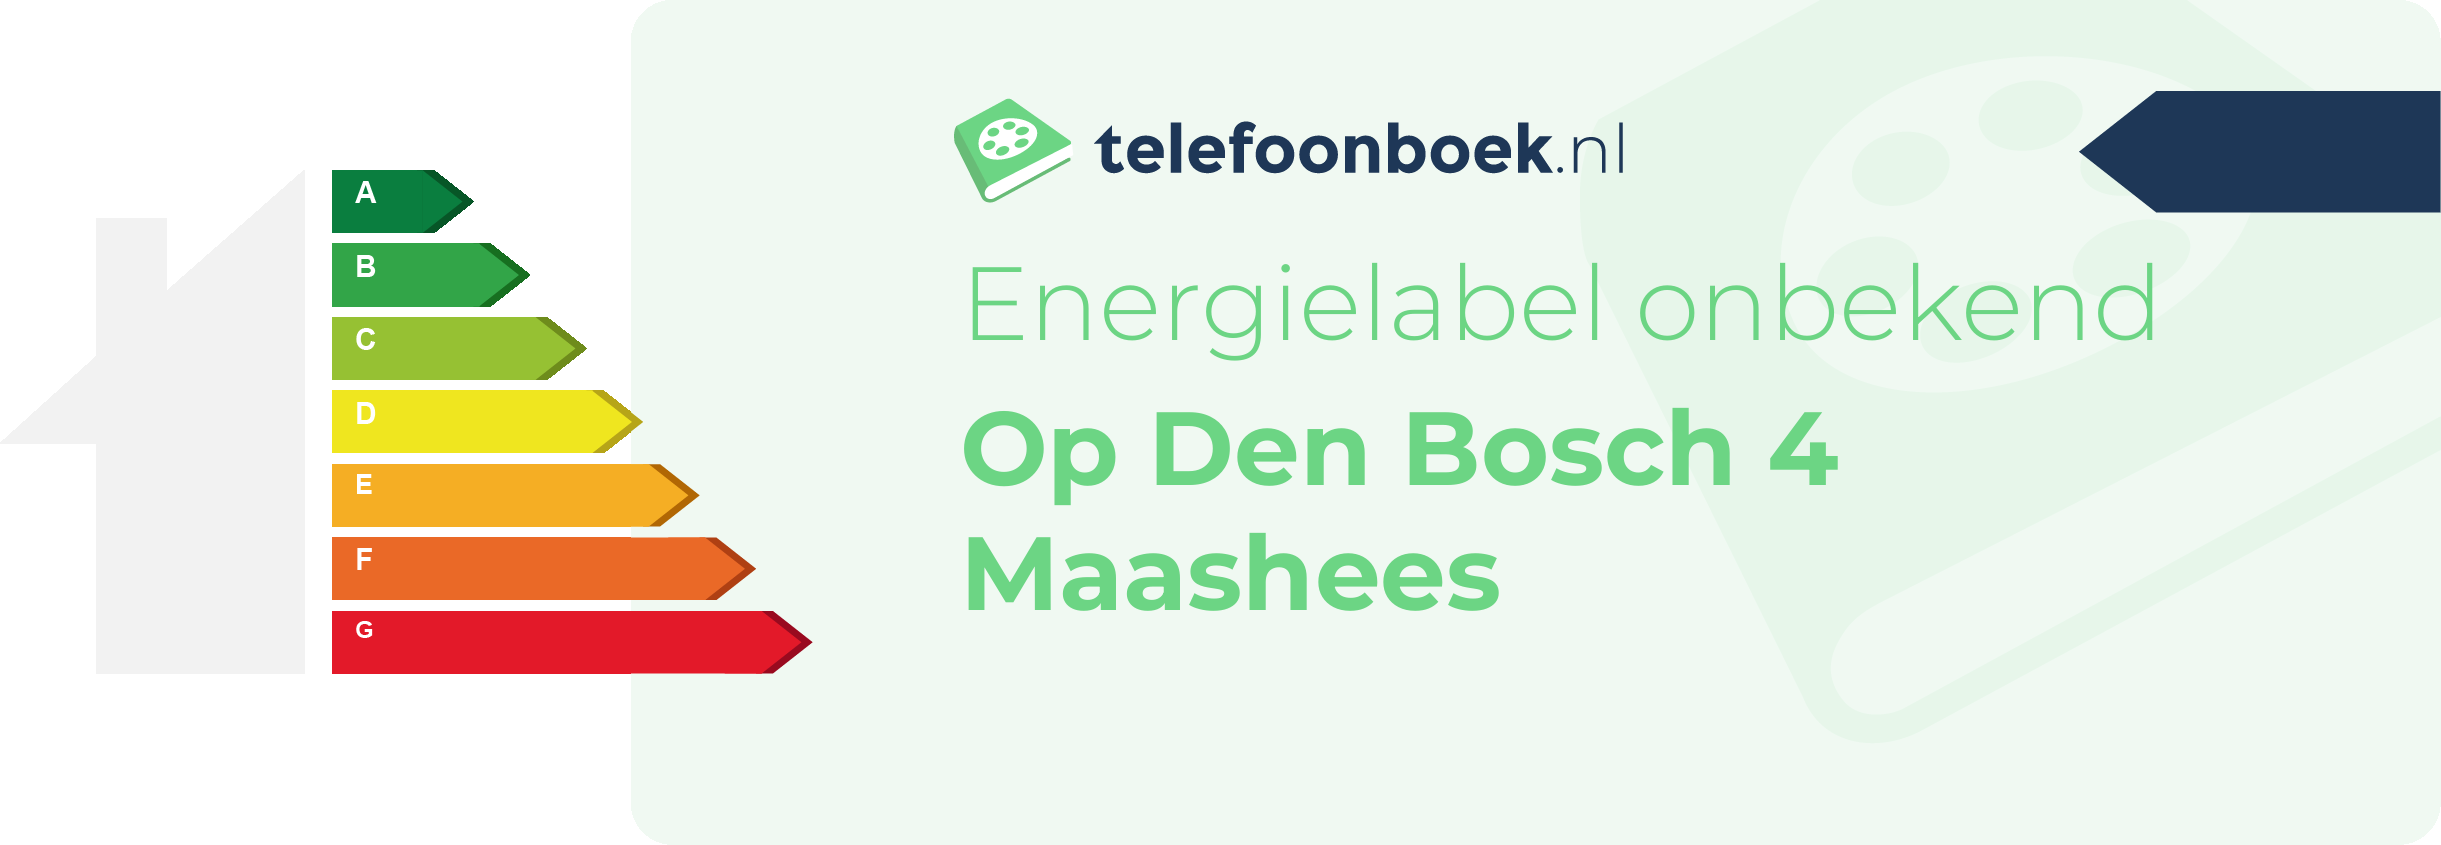 Energielabel Op Den Bosch 4 Maashees